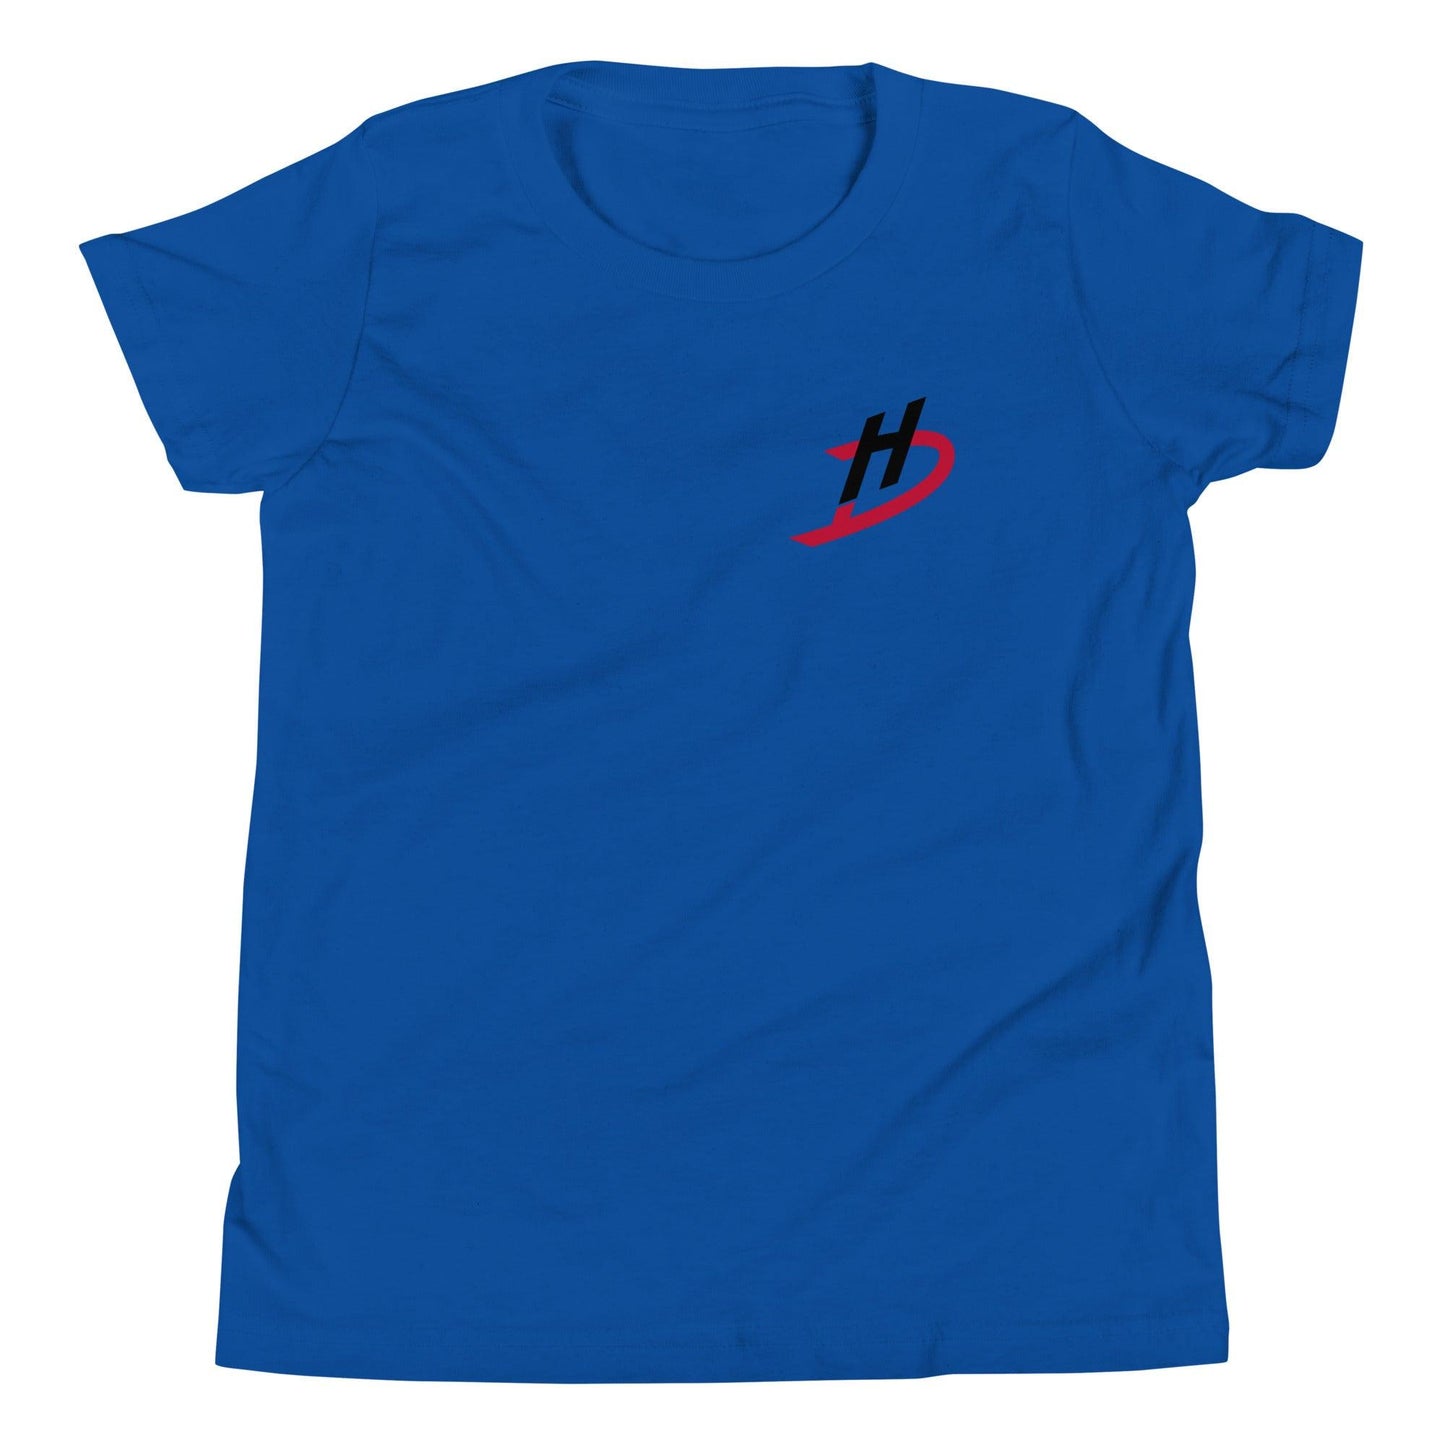 Hannah Davila "Essential" Youth T-Shirt - Fan Arch